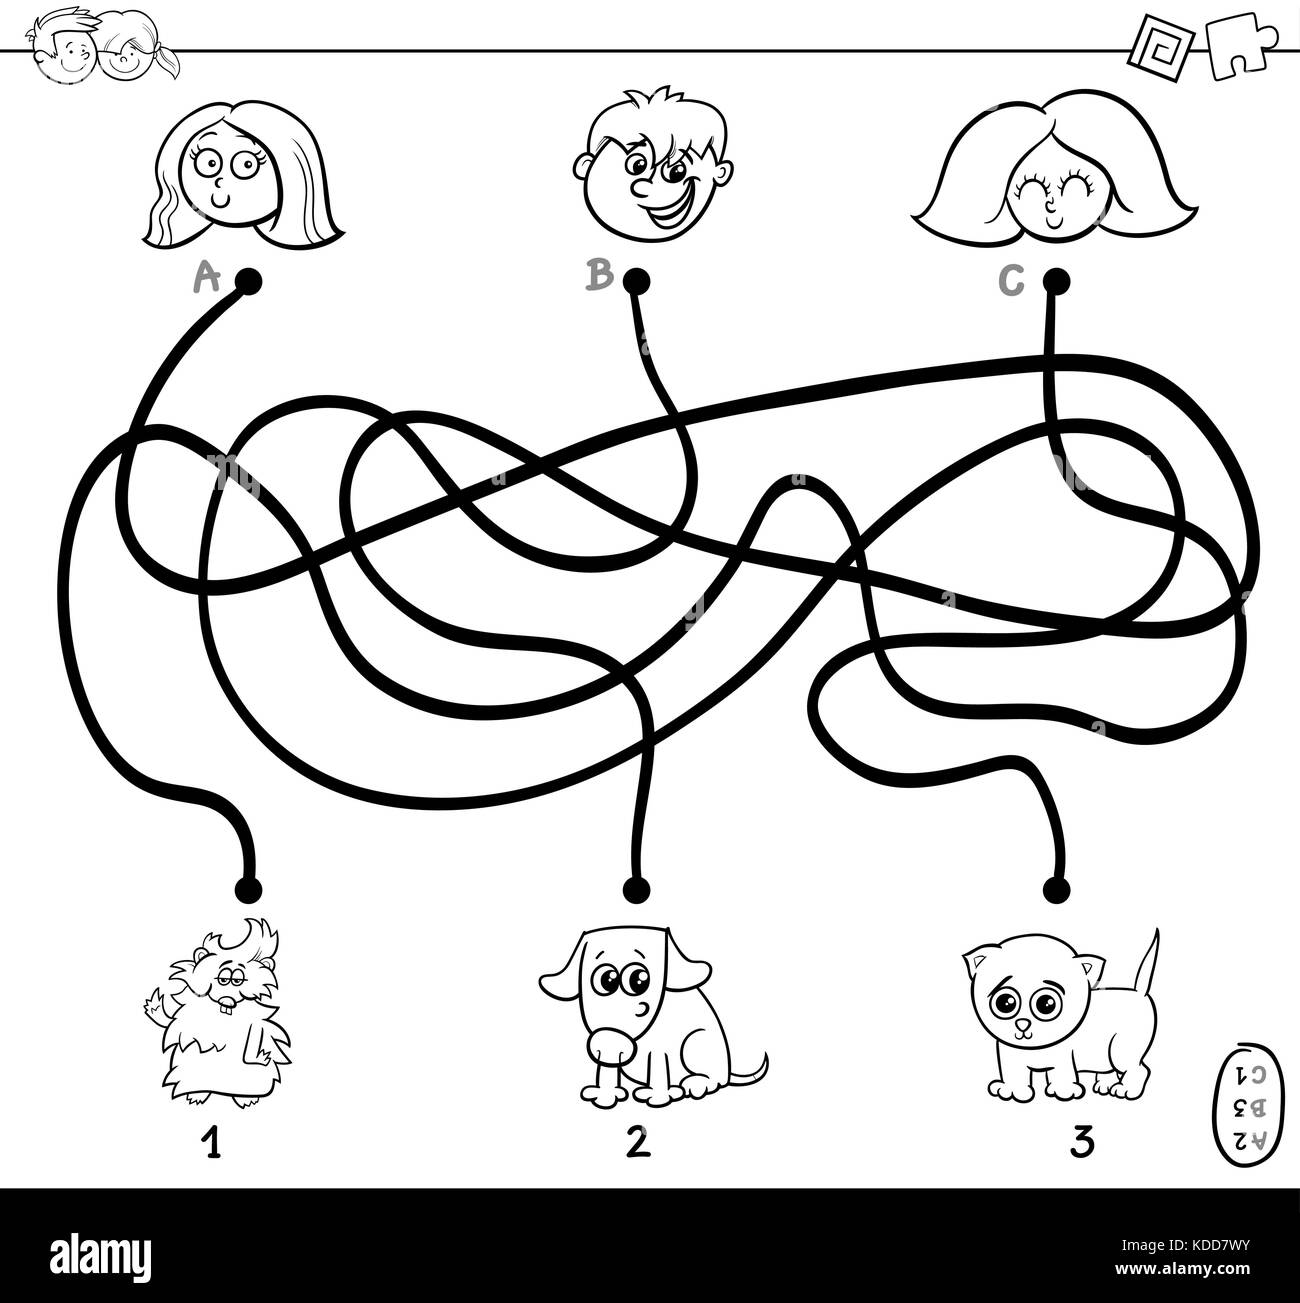 Schwarze und weiße Cartoon Illustration der Bahnen oder Labyrinth puzzle Aktivität Spiel mit Kindern und Haustier zeichen Malbuch Stock Vektor